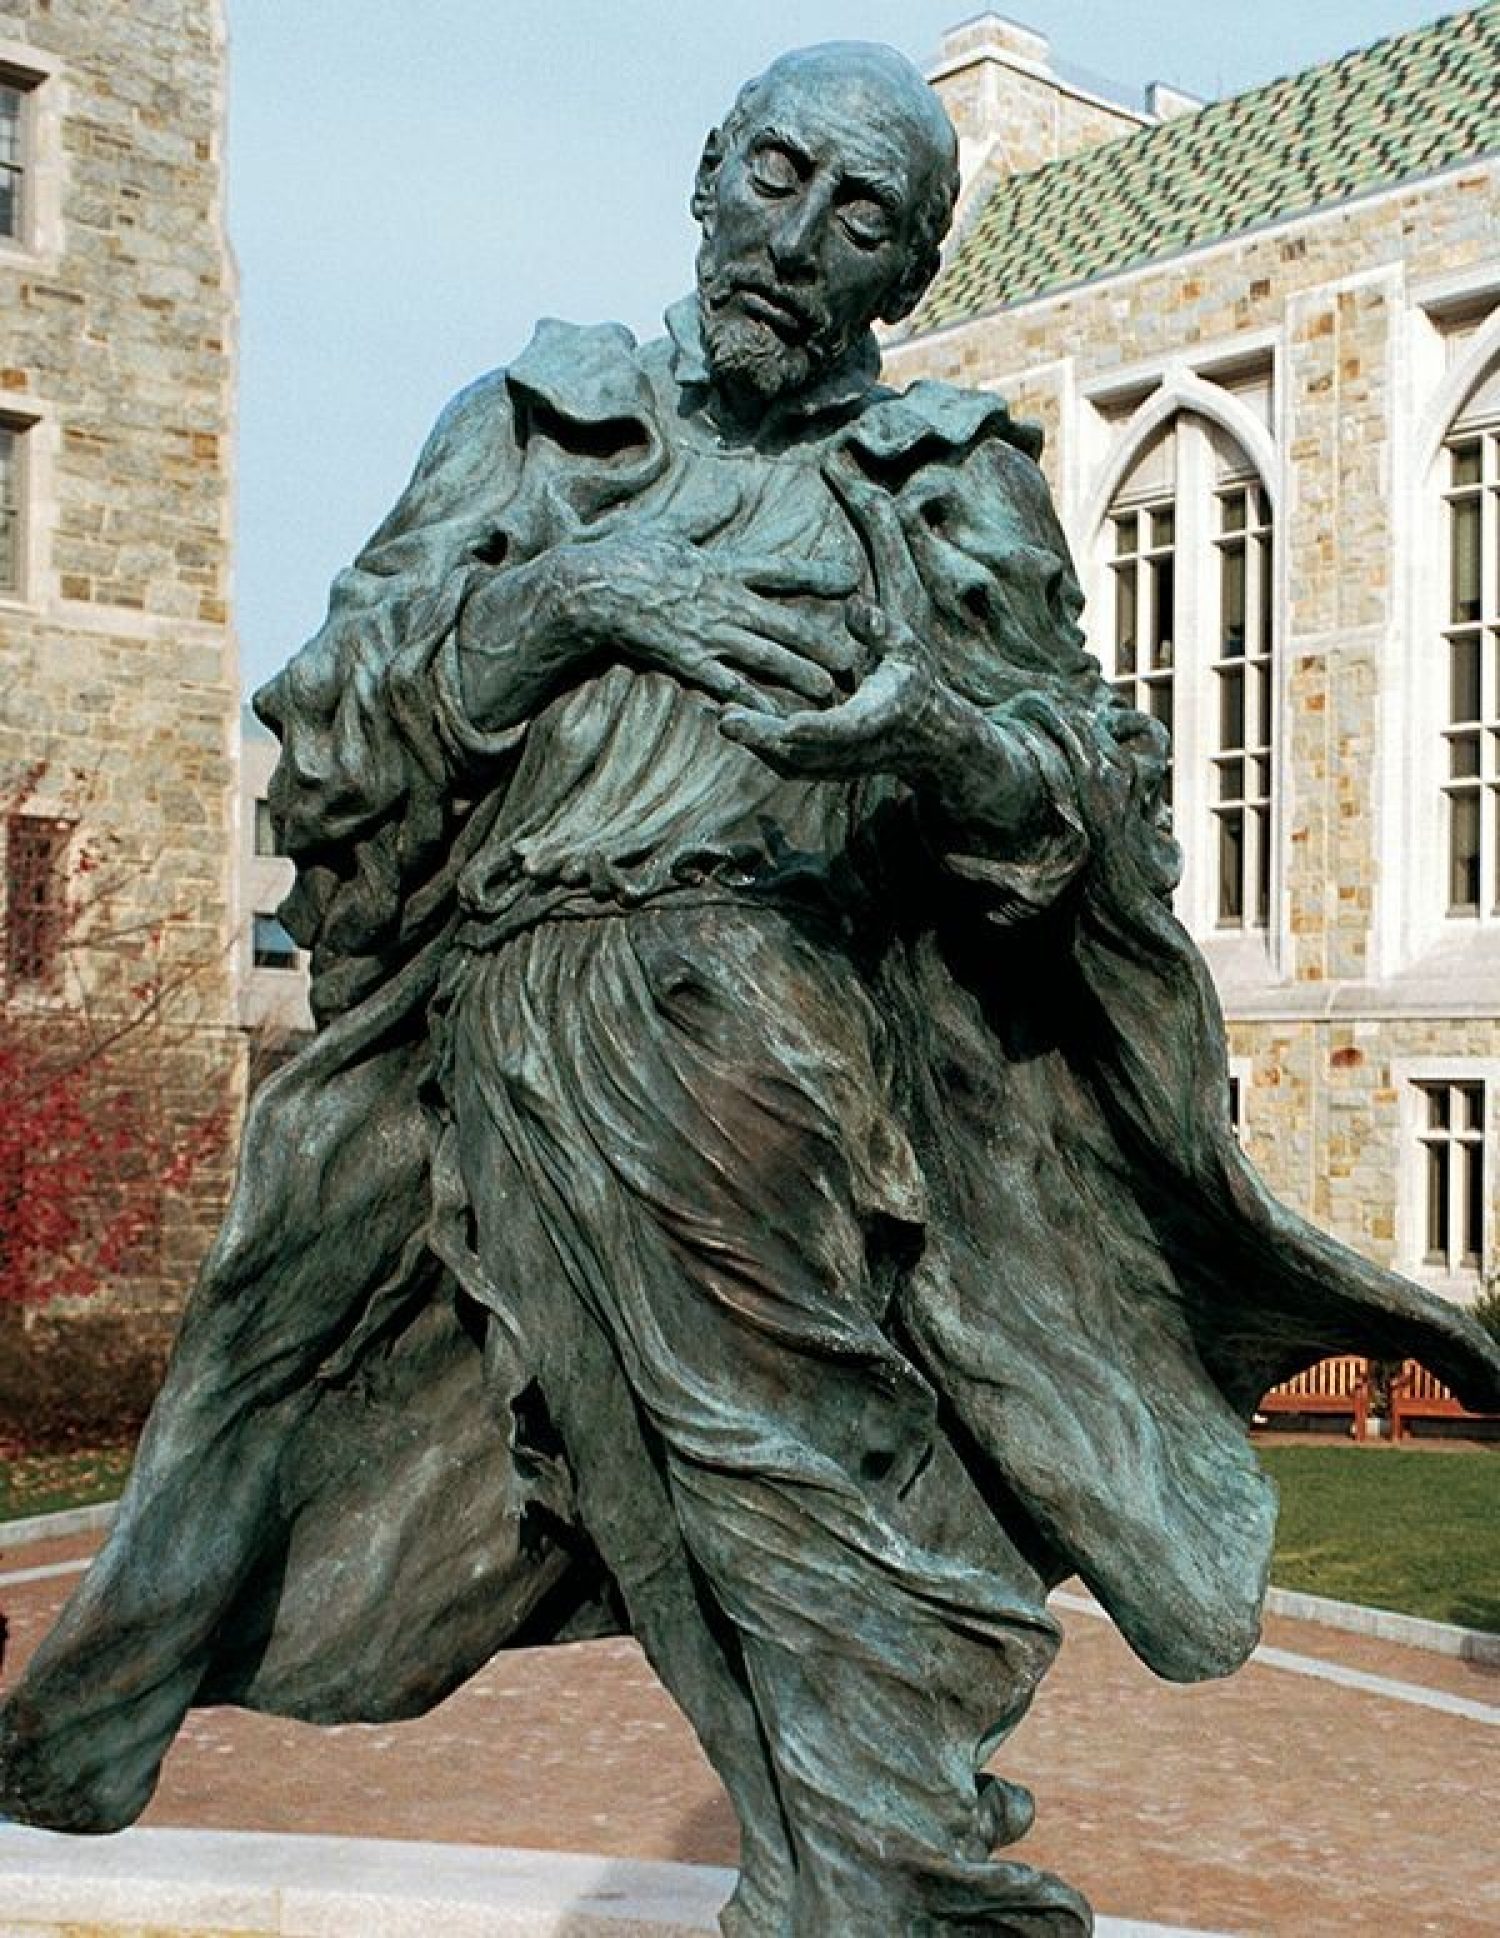 A statue of St. Ignatius